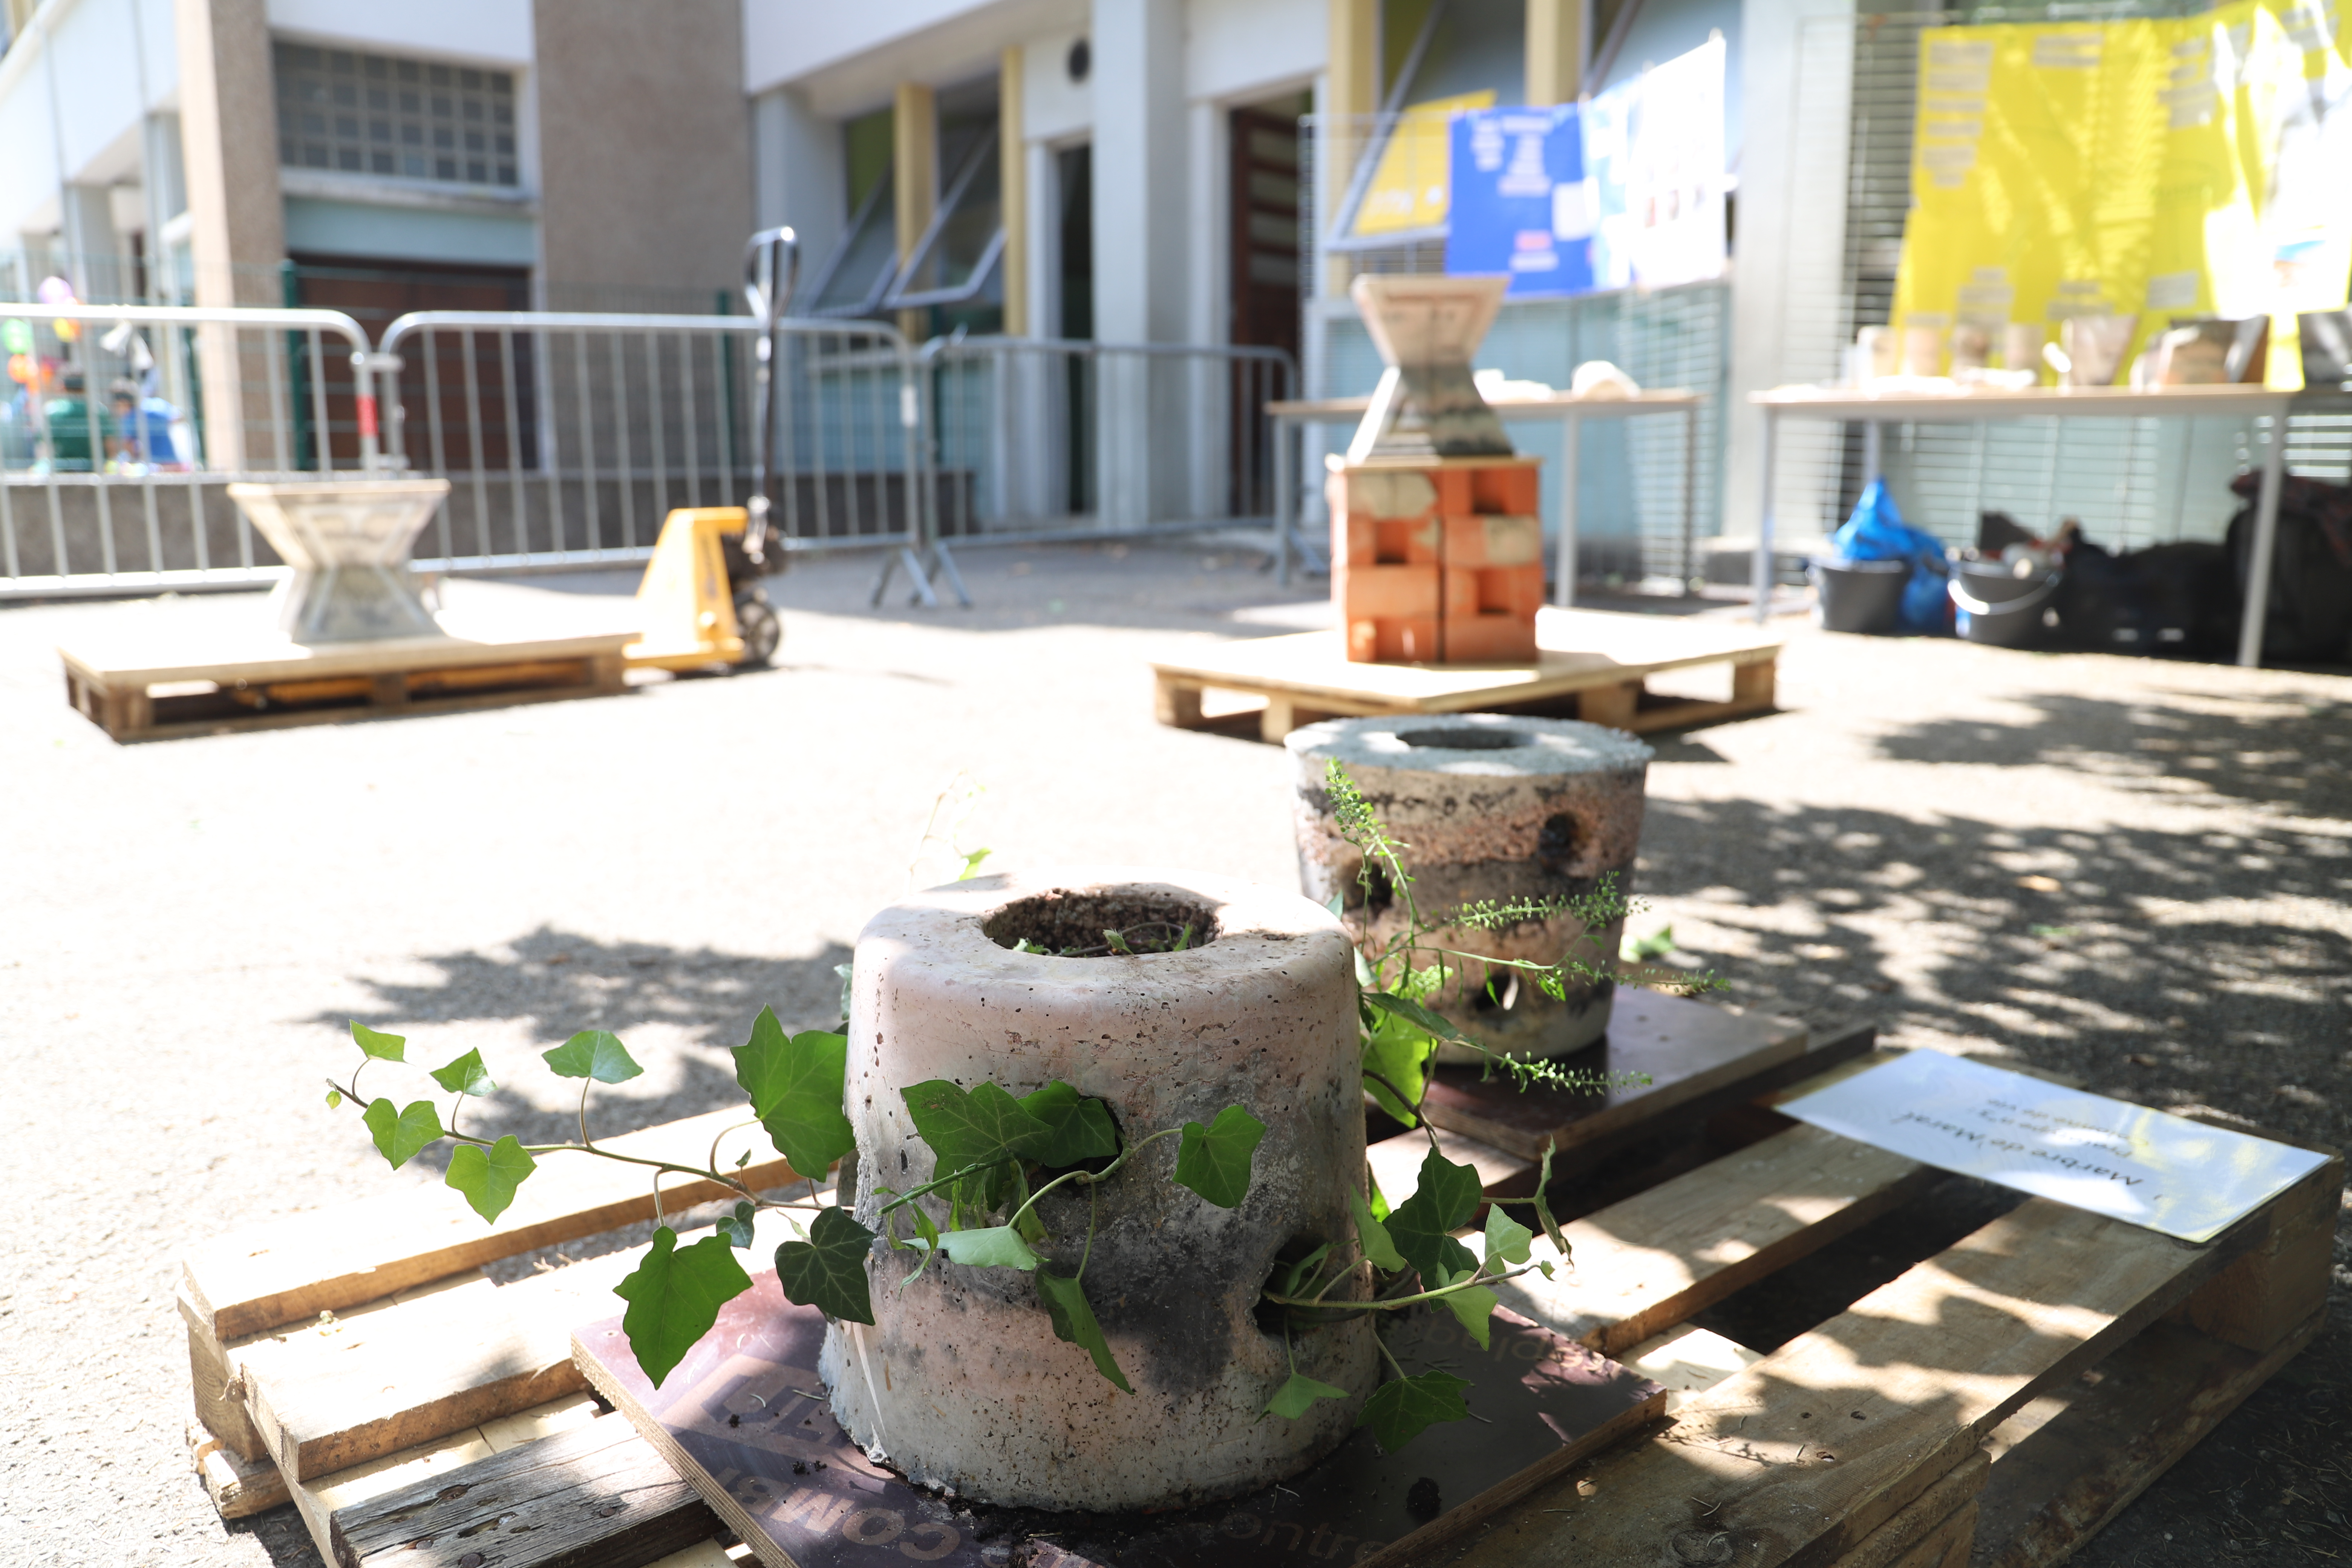 Les trois prototypes confectionnés par les élèves seront installés dans la cours de l'école et pourront trouver place dans les espaces publics du quartier dans le cadre de la rénovation urbaine. 